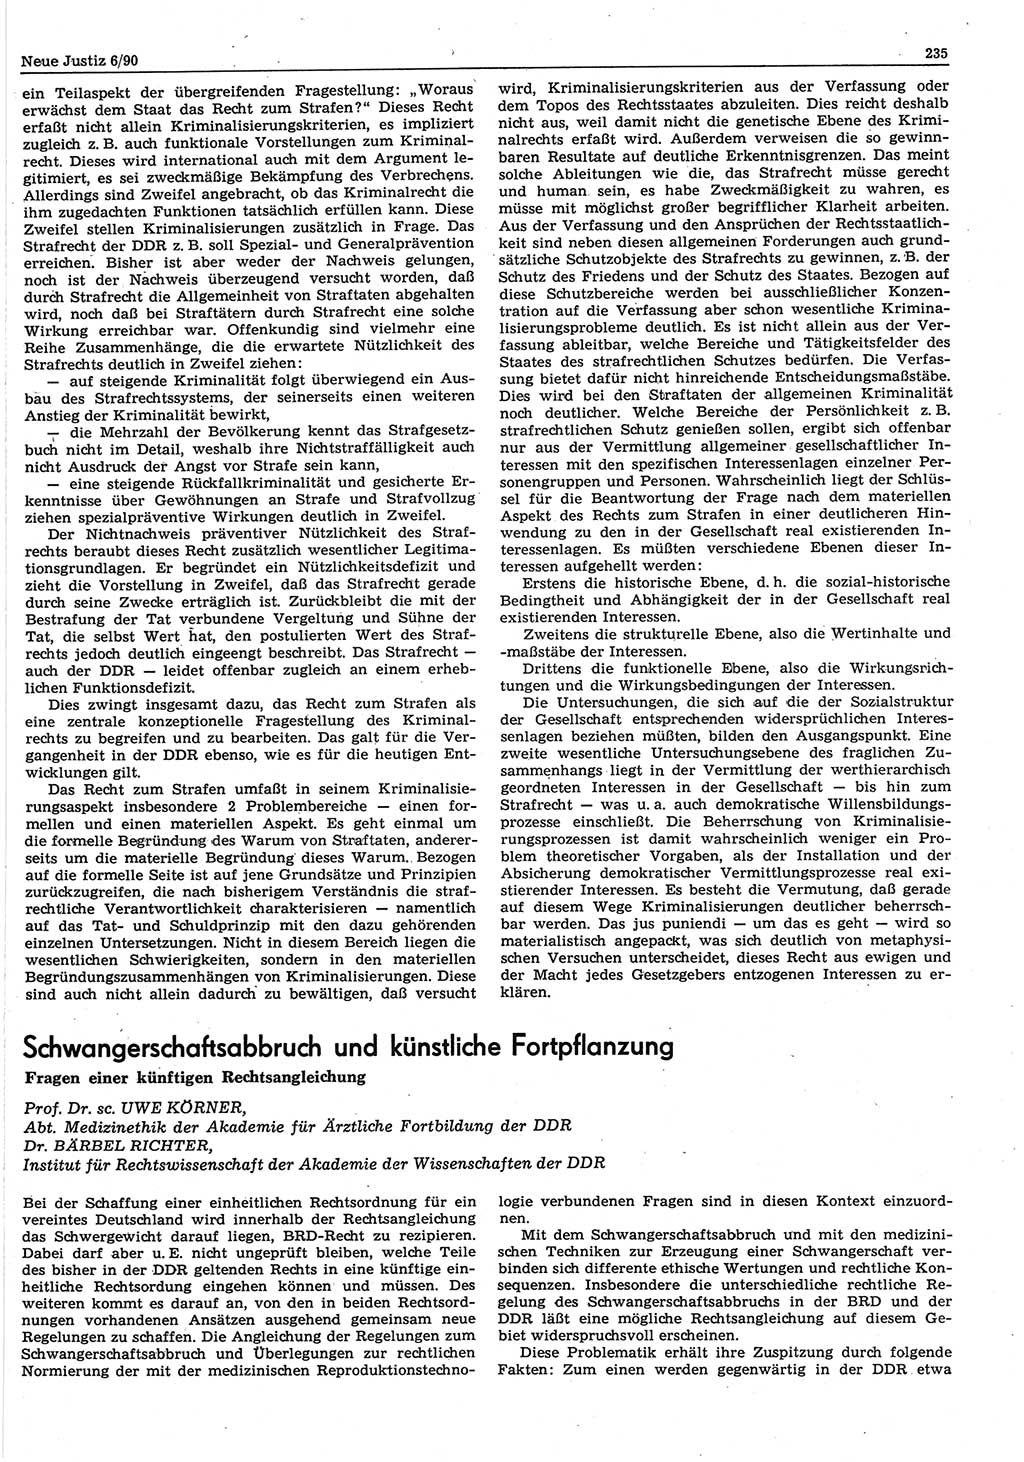 Neue Justiz (NJ), Zeitschrift für Rechtsetzung und Rechtsanwendung [Deutsche Demokratische Republik (DDR)], 44. Jahrgang 1990, Seite 235 (NJ DDR 1990, S. 235)